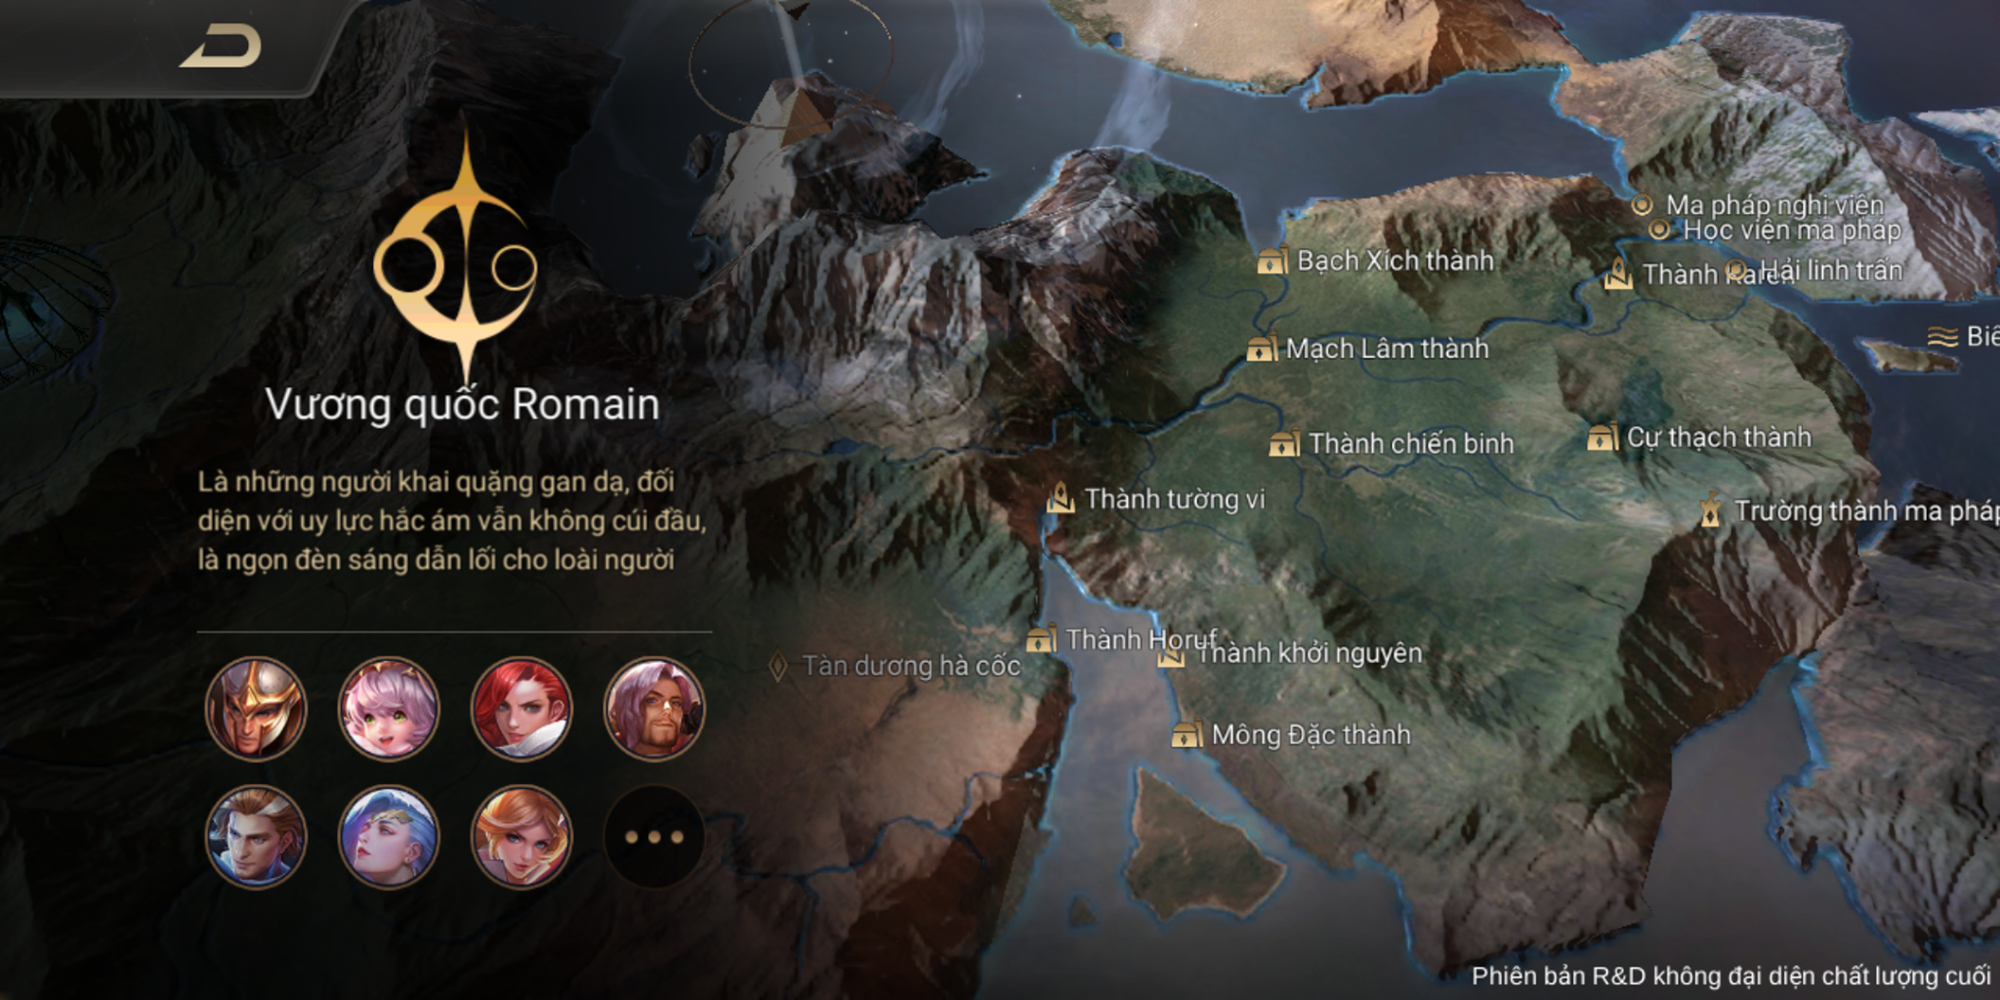 Cảm nhận sự khác biệt khi xem những hình ảnh map Runeterra của LMHT Liên Quân Mobile. Với các vùng đất đầy tính hệ thống hóa, lối chơi chiến thuật cực kì tinh tế và đội ngũ tay đua đầy tài năng, sẽ khiến bạn cảm thấy như mình đang bước vào một trận đấu chưa bao giờ thấy.